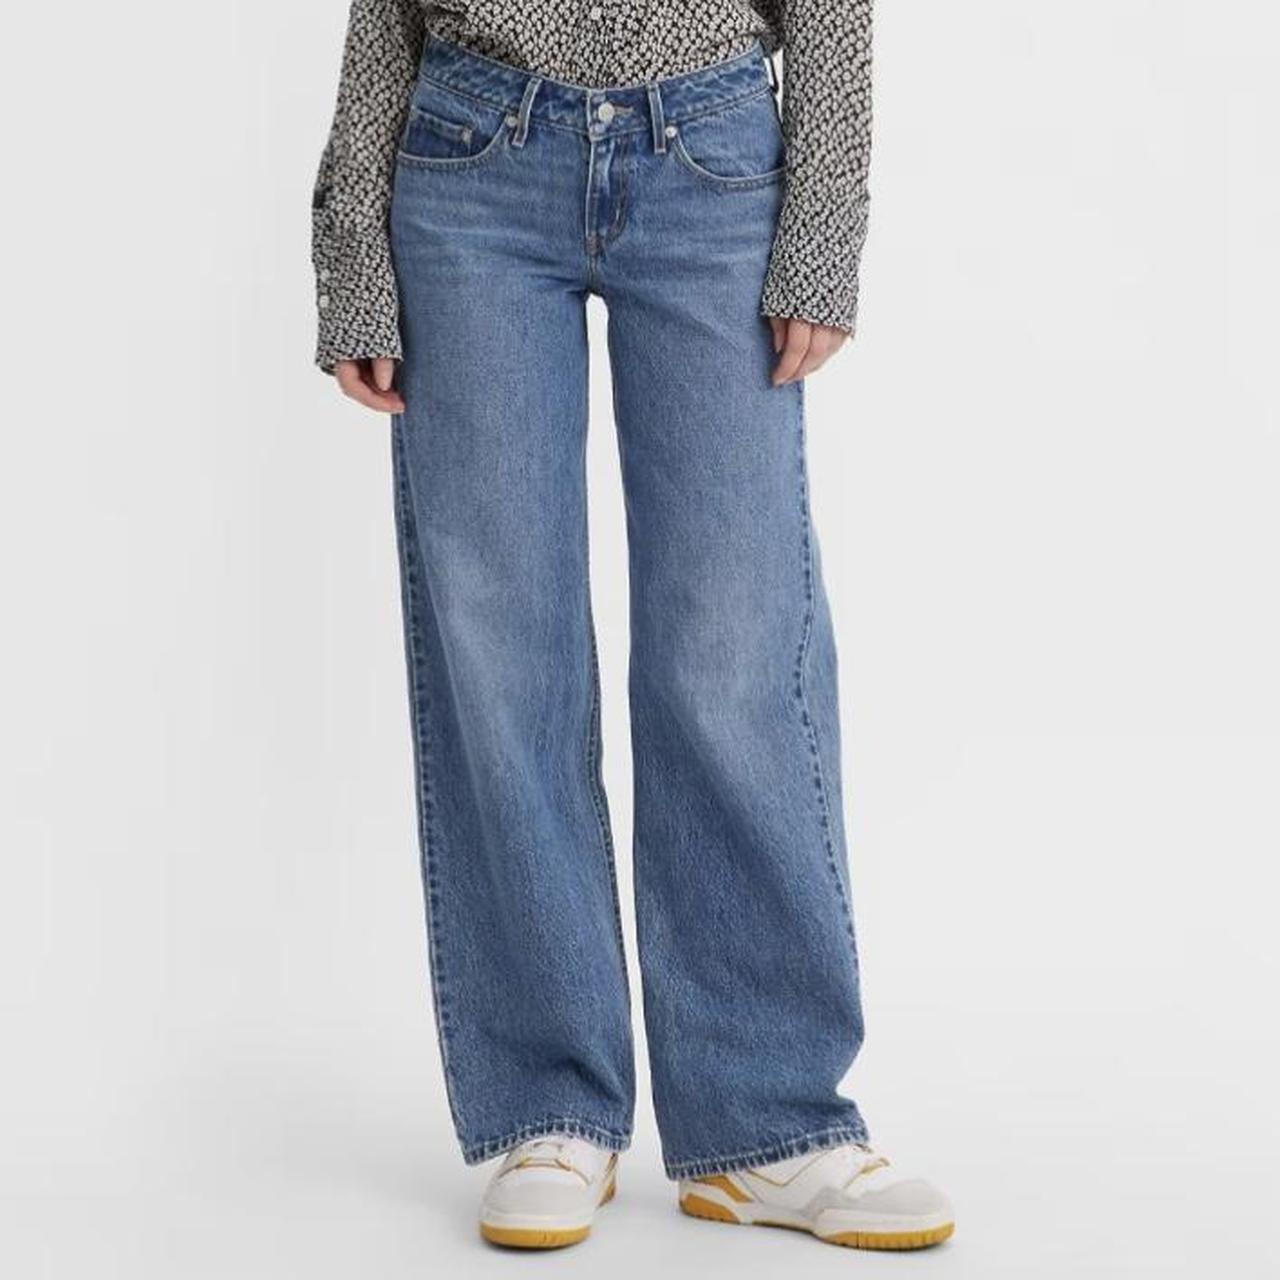 Levis Low Loose Jeans Medium Wash Size:... - Depop